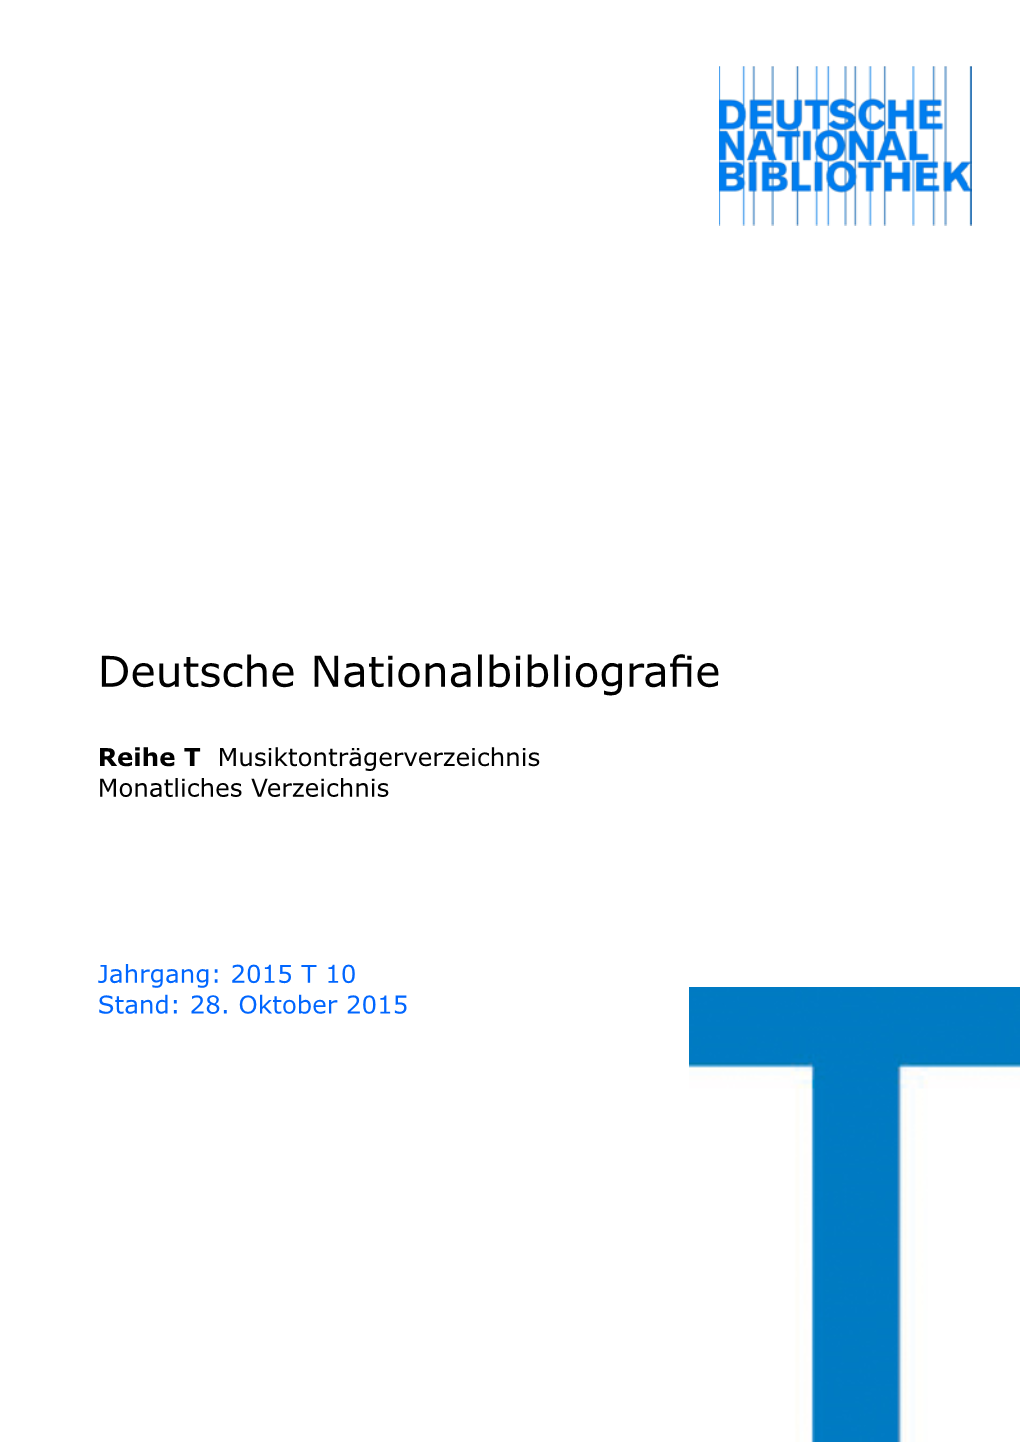 Deutsche Nationalbibliografie 2015 T 10